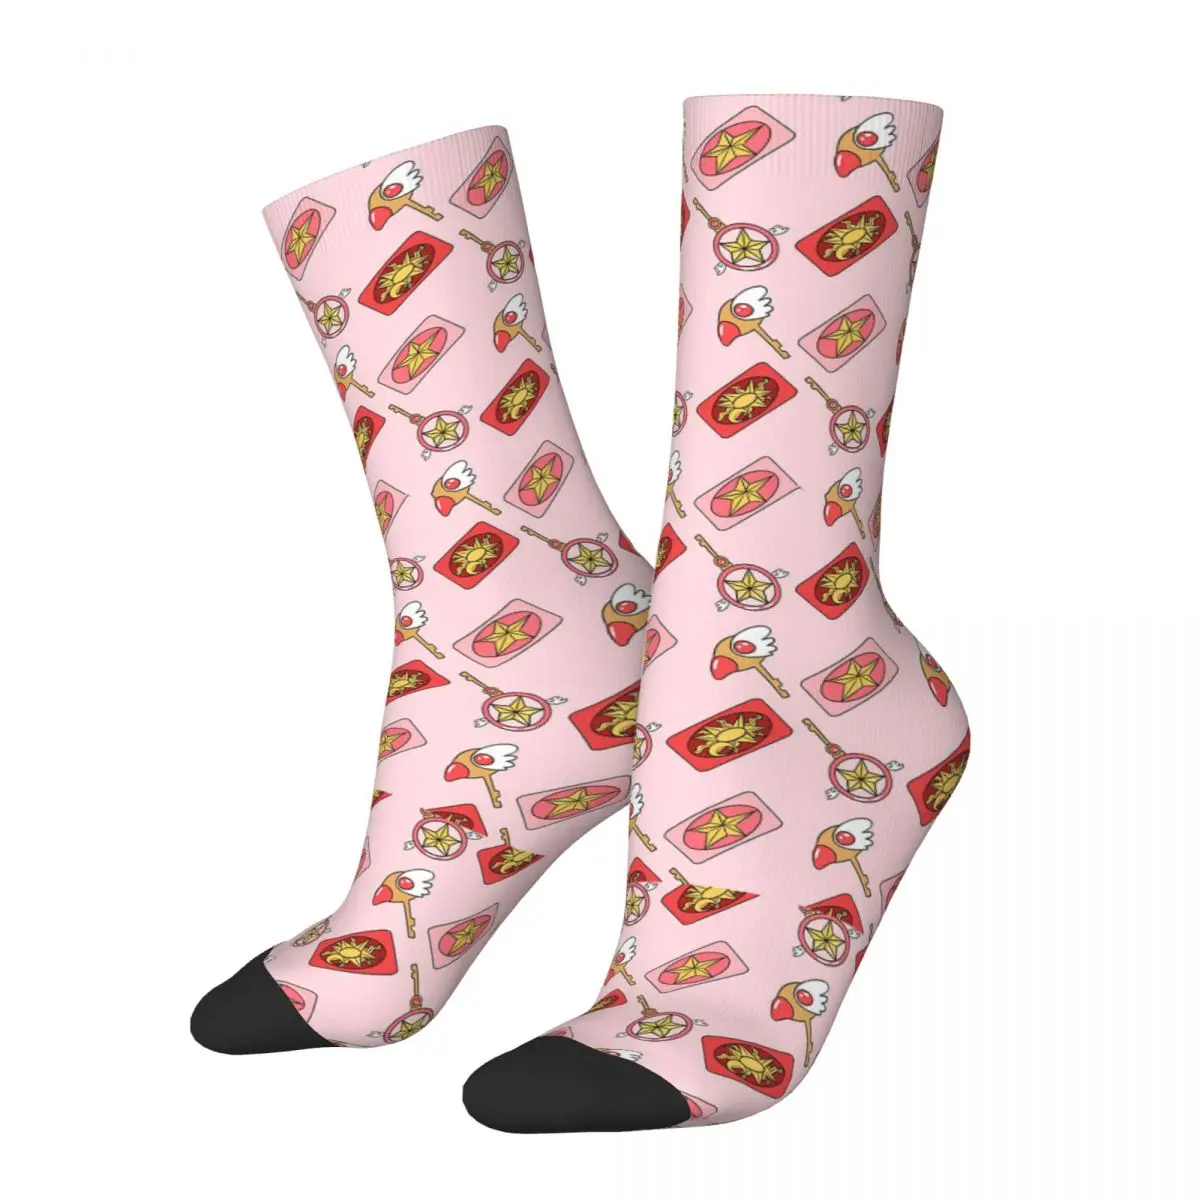 

Носки мужские компрессионные в стиле Харадзюку, смешные сумасшедшие носки розового цвета с принтом сакуры в стиле хип-хоп, с надписью Happy, подарок для мальчиков